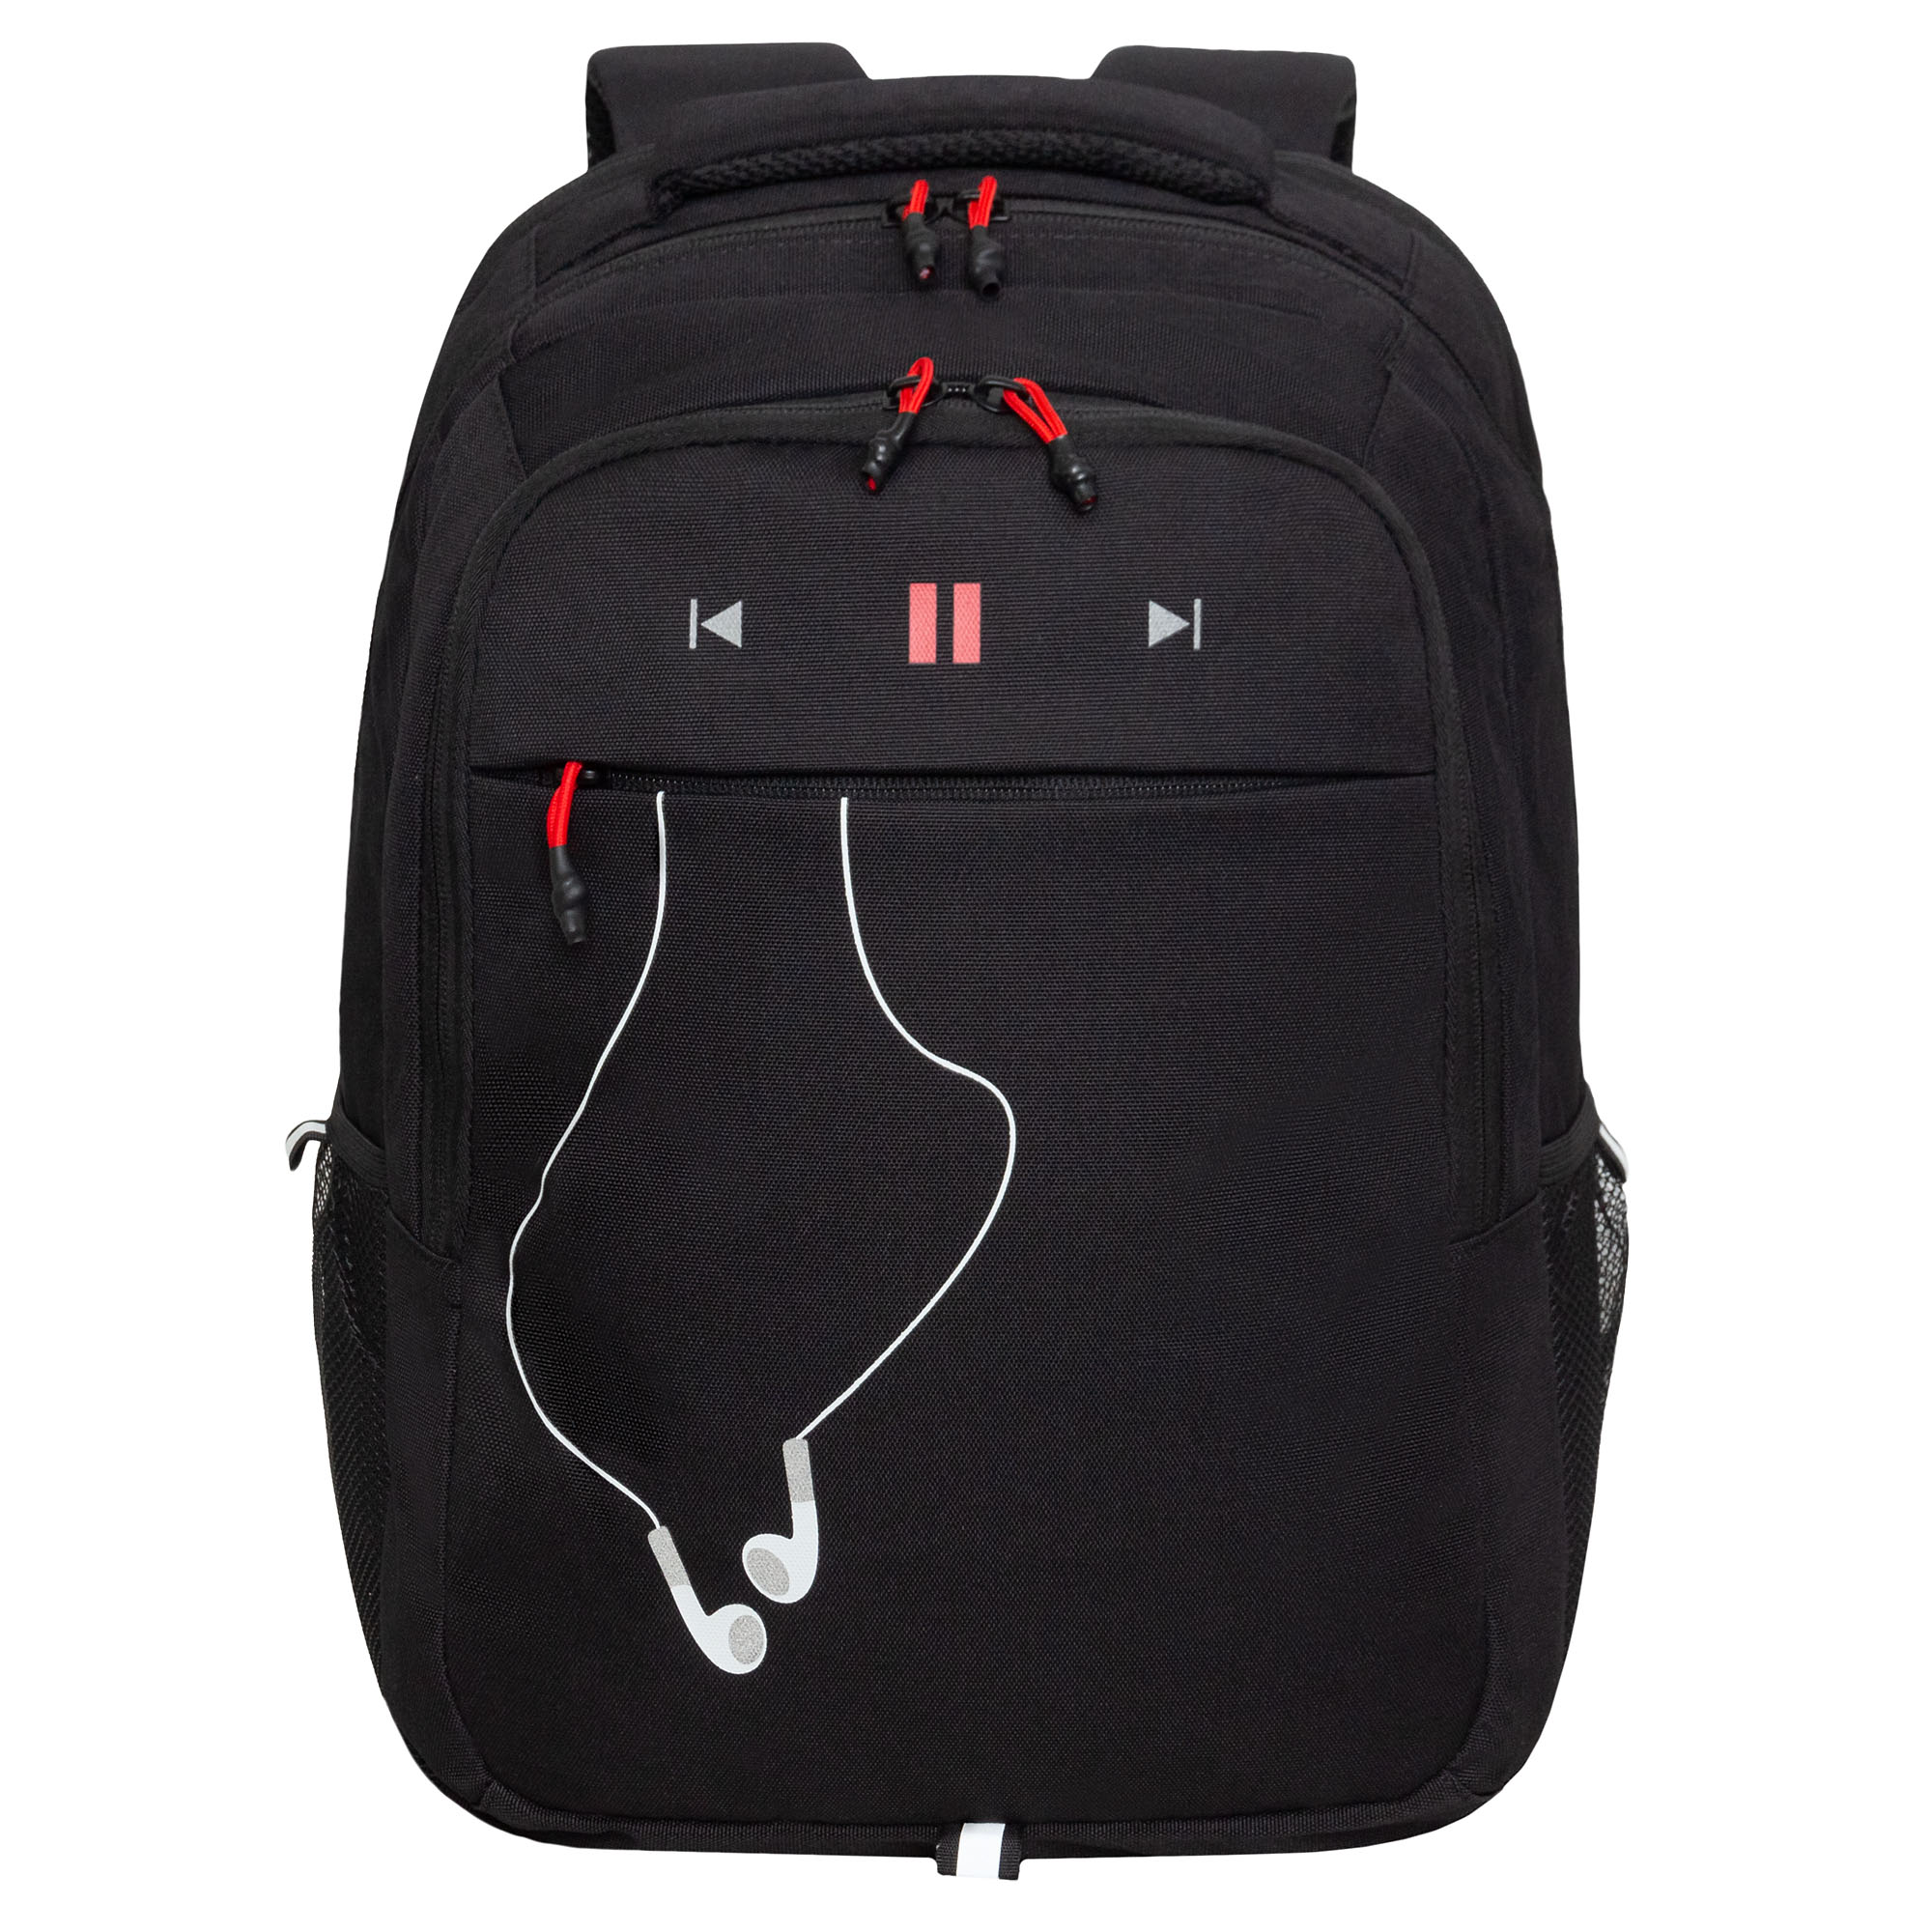 Рюкзак молодежный Grizzly с карманом для ноутбука 15, RU-432-4/2, черный, красный